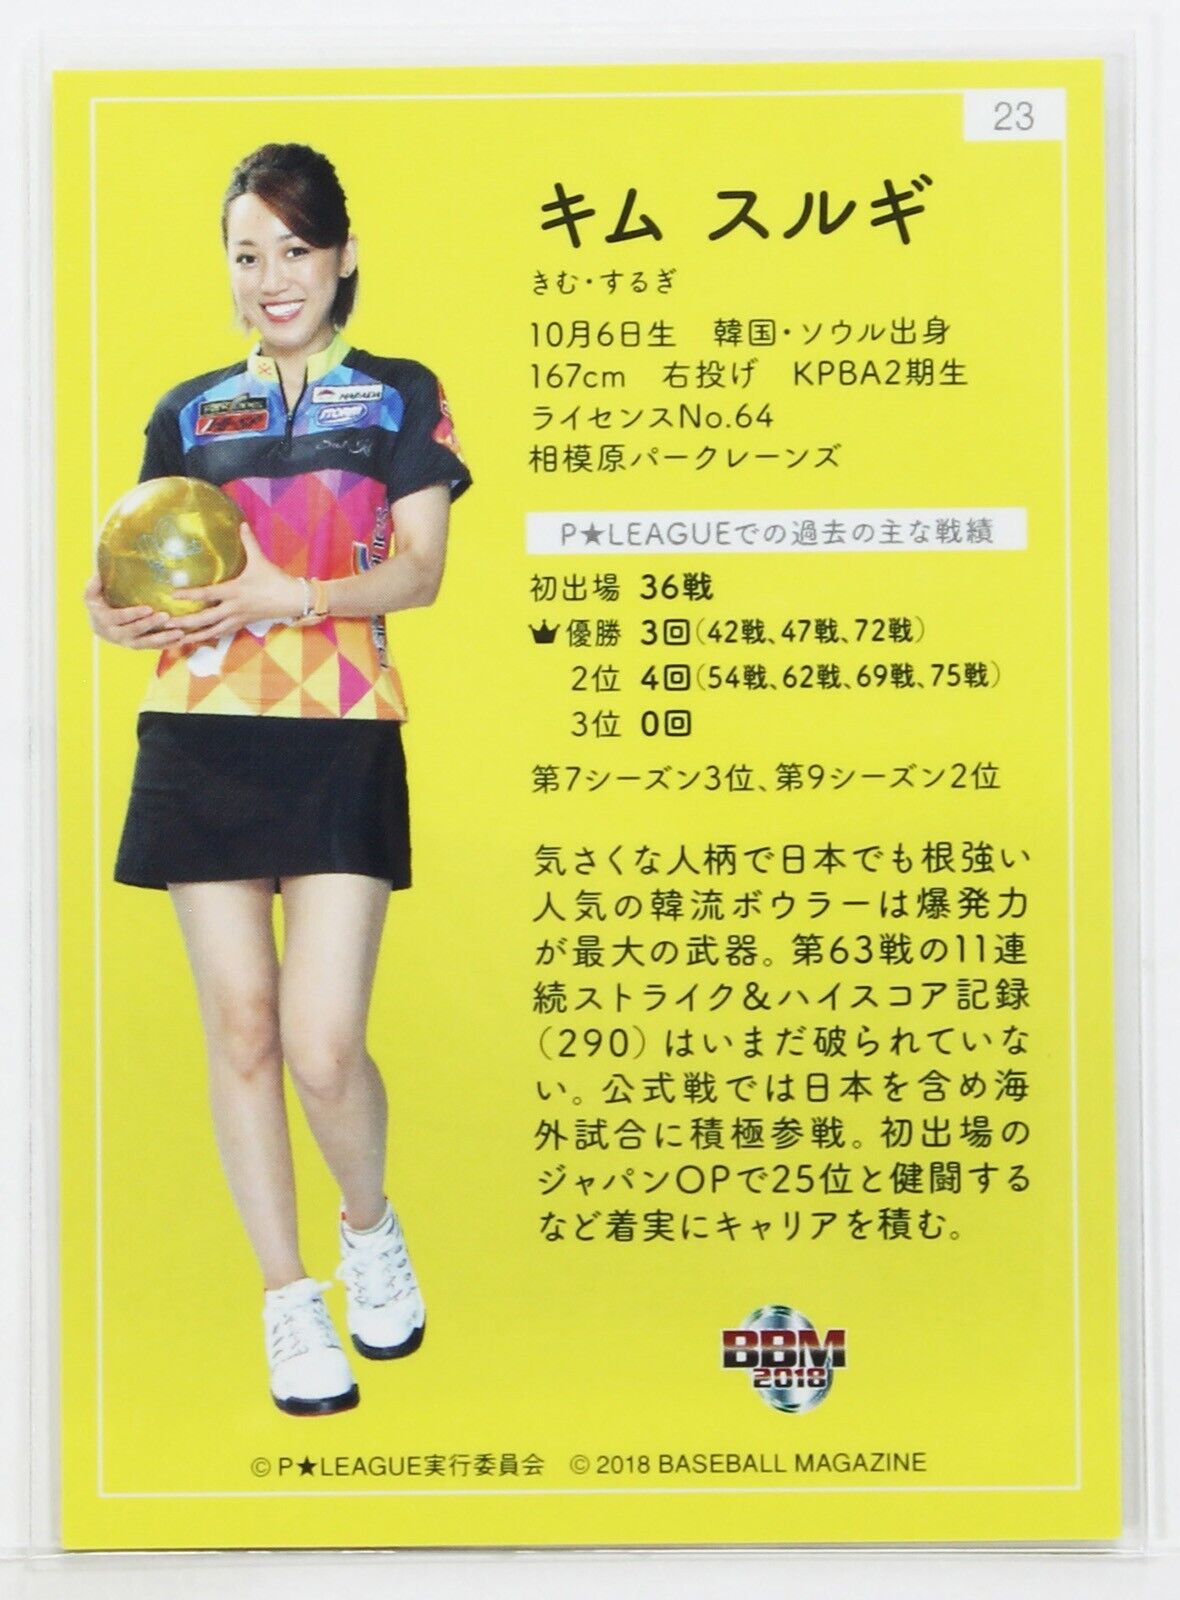 SEUL KI KIM - 2018 BBM Women's Pro Bowling Trading Card | eBay